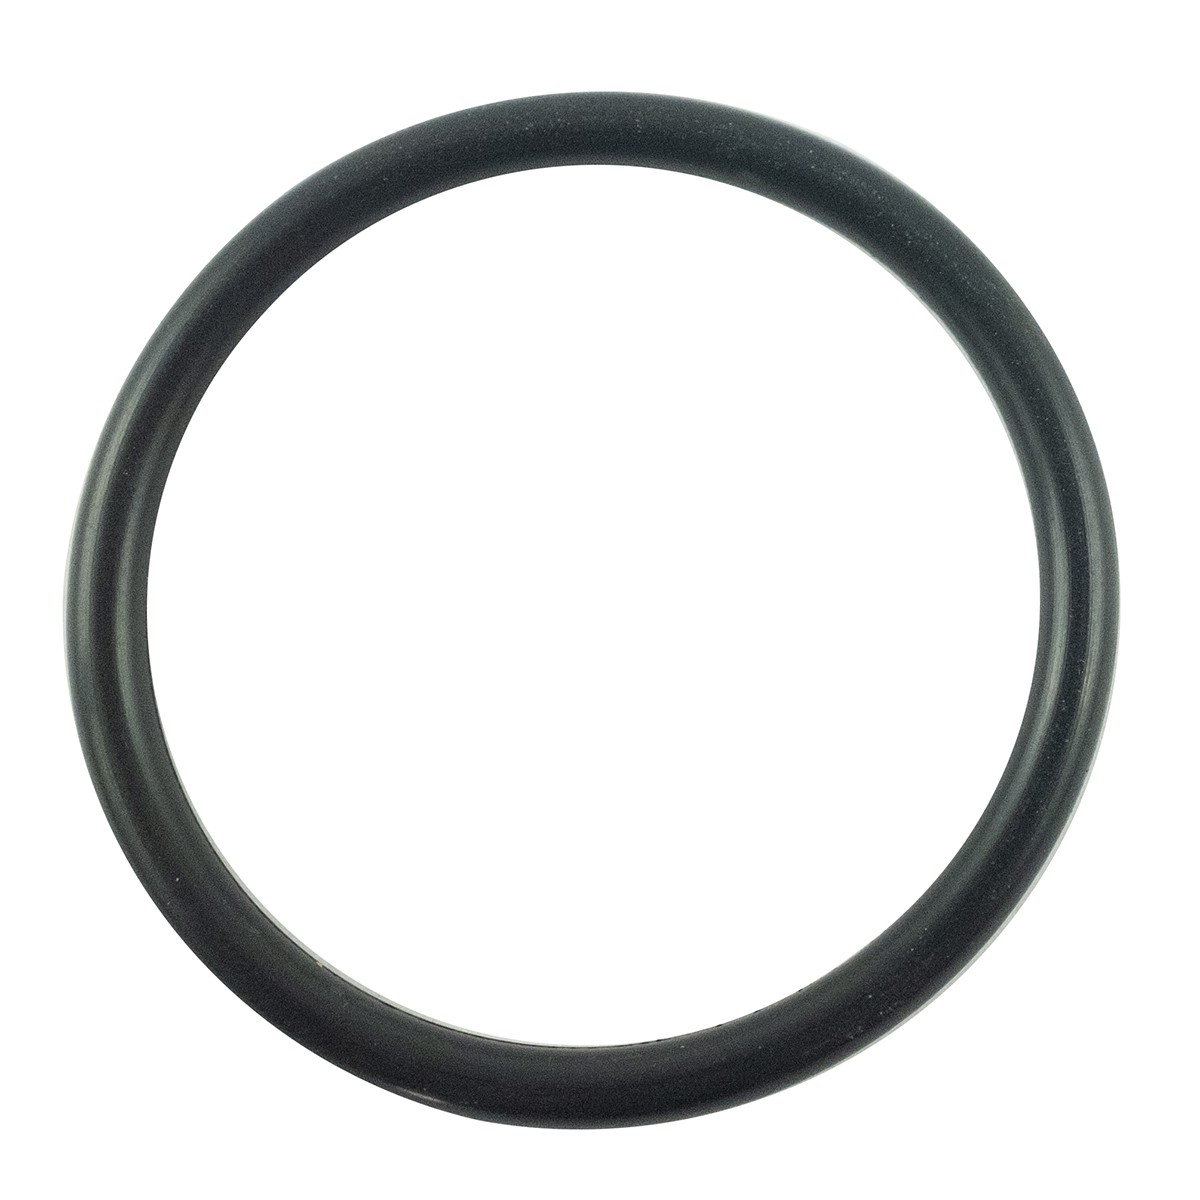 O-ring 34.4 x 3.10 mm / LS XJ25 / LS MT1.25 / LS MT3.35 / LS MT3.40 / S802035010 / 40030249